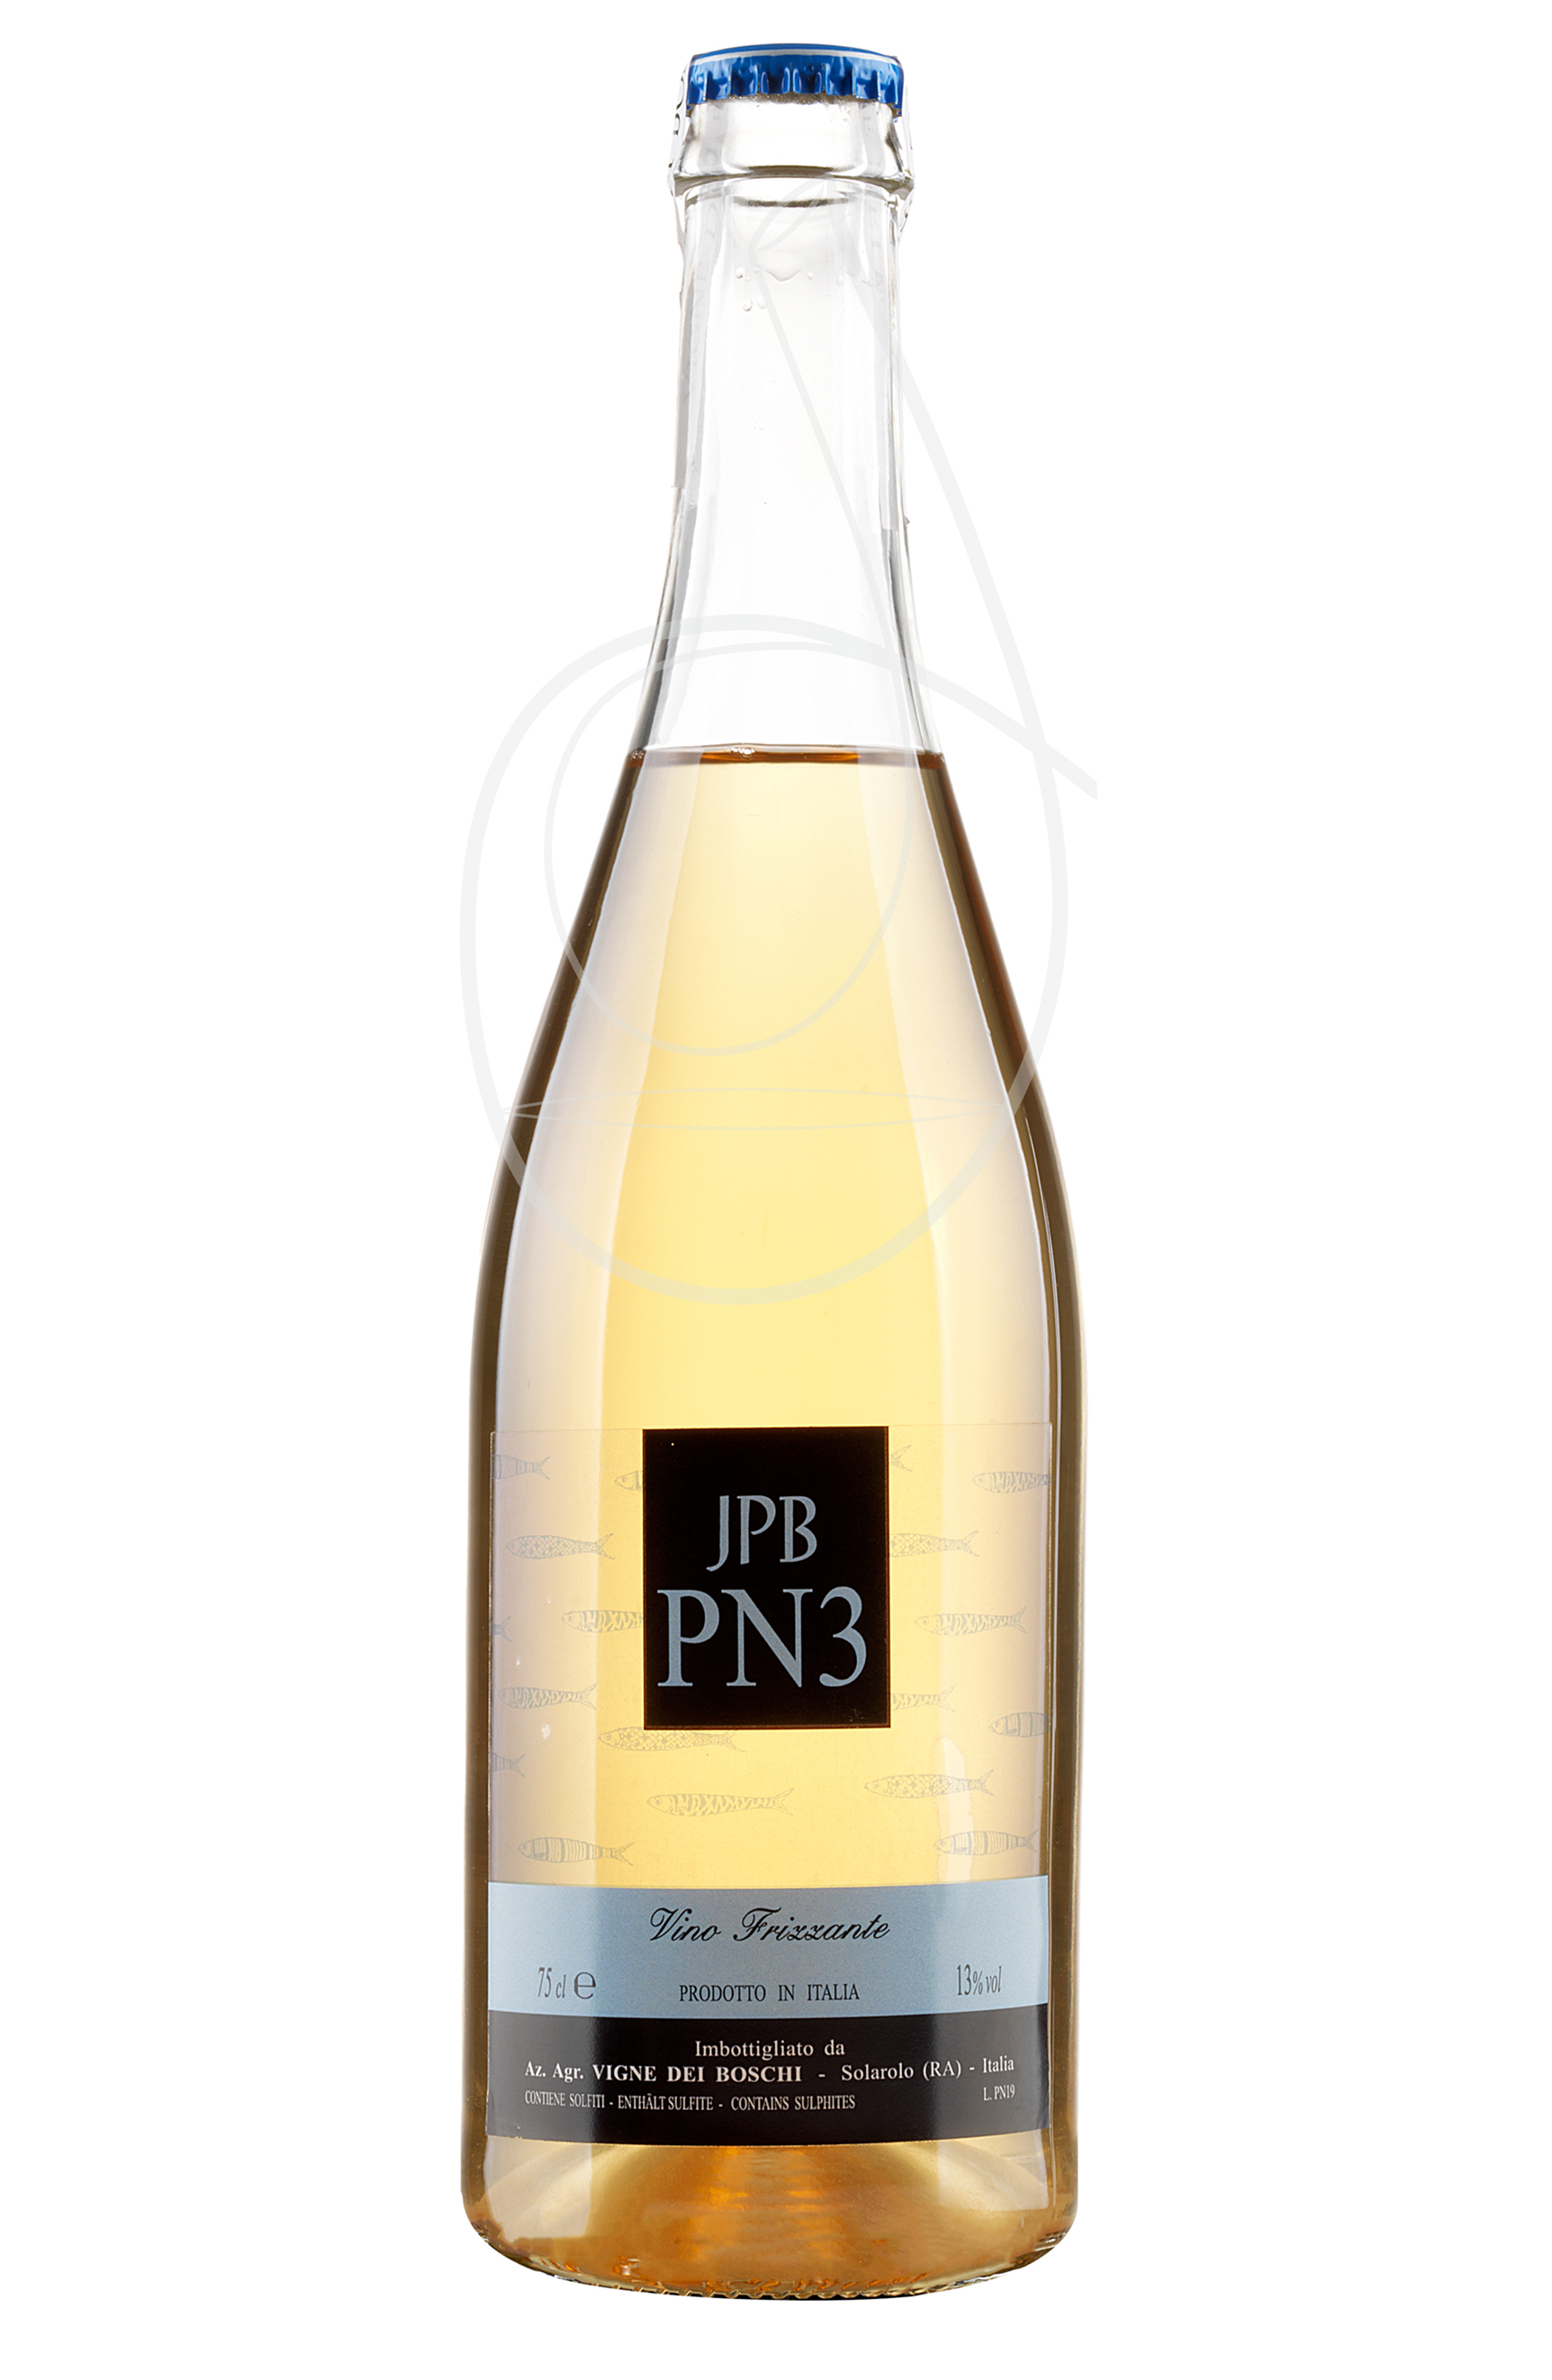 JPB-PN3-Trebbiano Sur lì Vigne dei Boschi